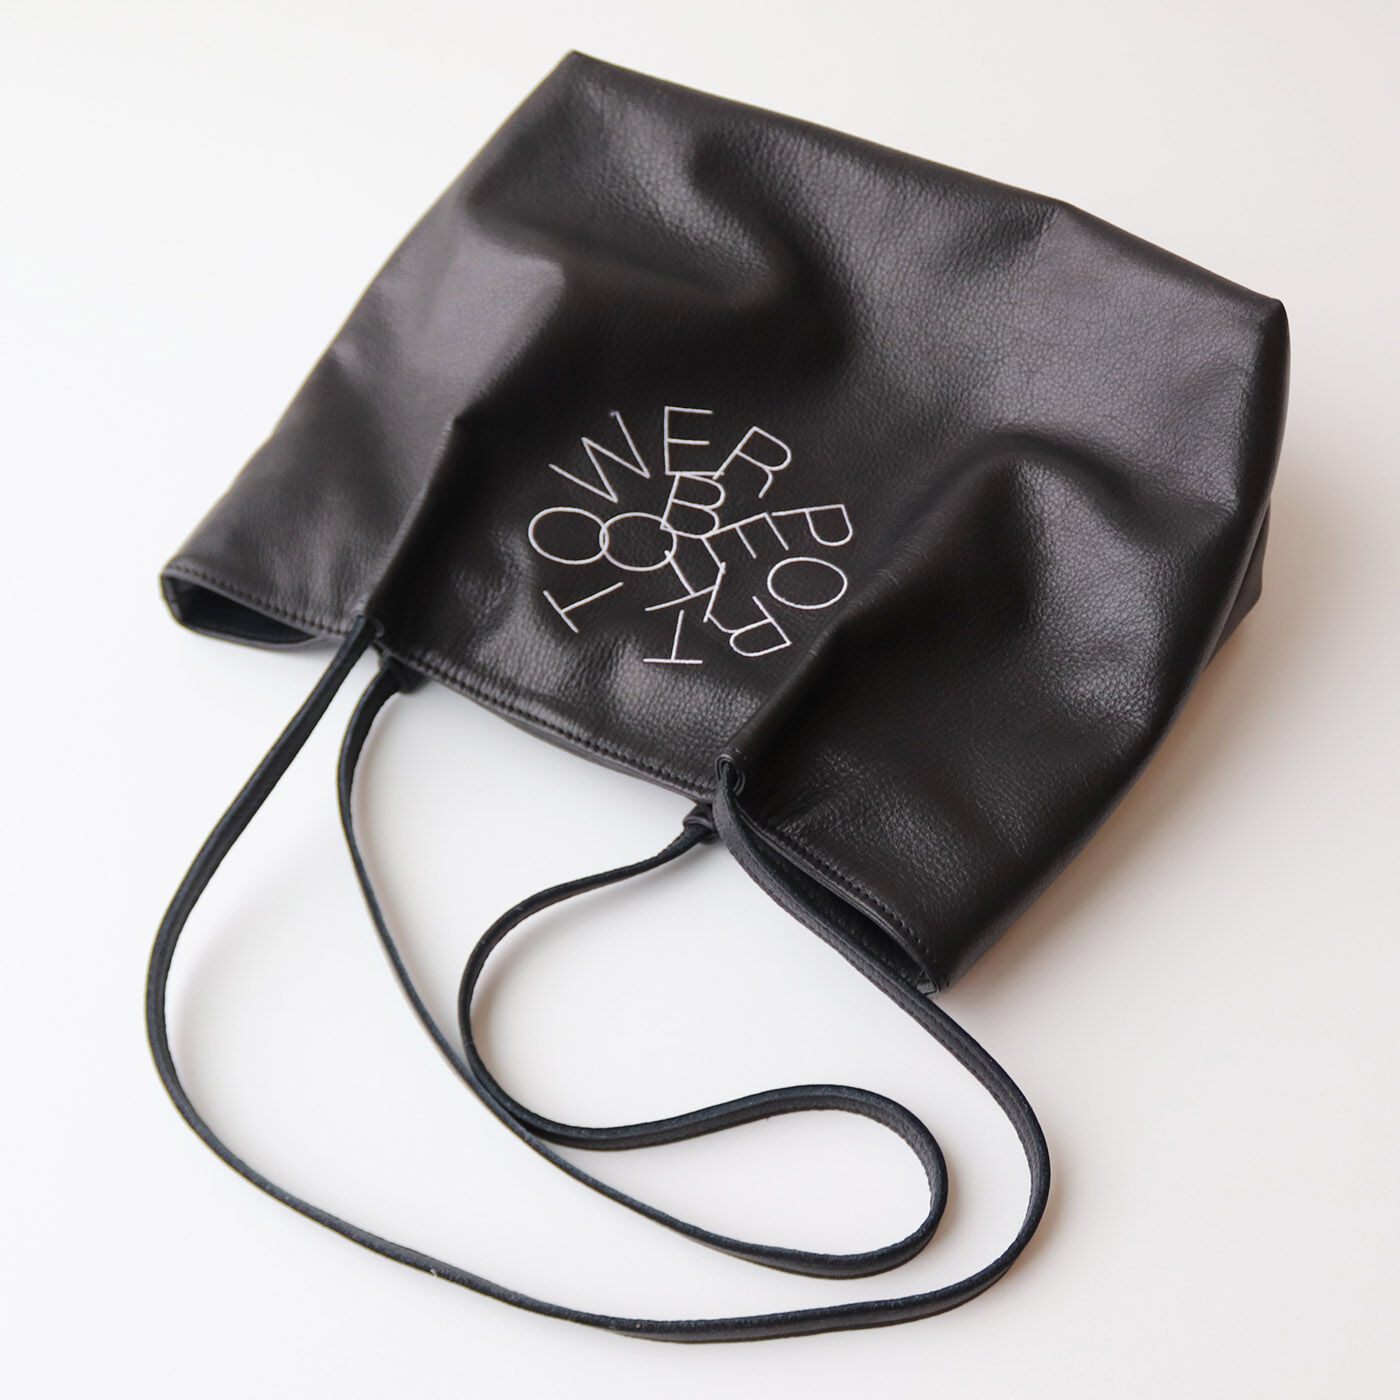 フェリシモコレクション|ブリリアンス神戸基金 KOBE PORT TOWER 福岡の鞄作家が作った 職人本革のカーポラヴォーロトート〈Black〉|イタリア語で「傑作」という意味の「カーポラヴォ―ロ」トートと命名した渾身の逸品です。